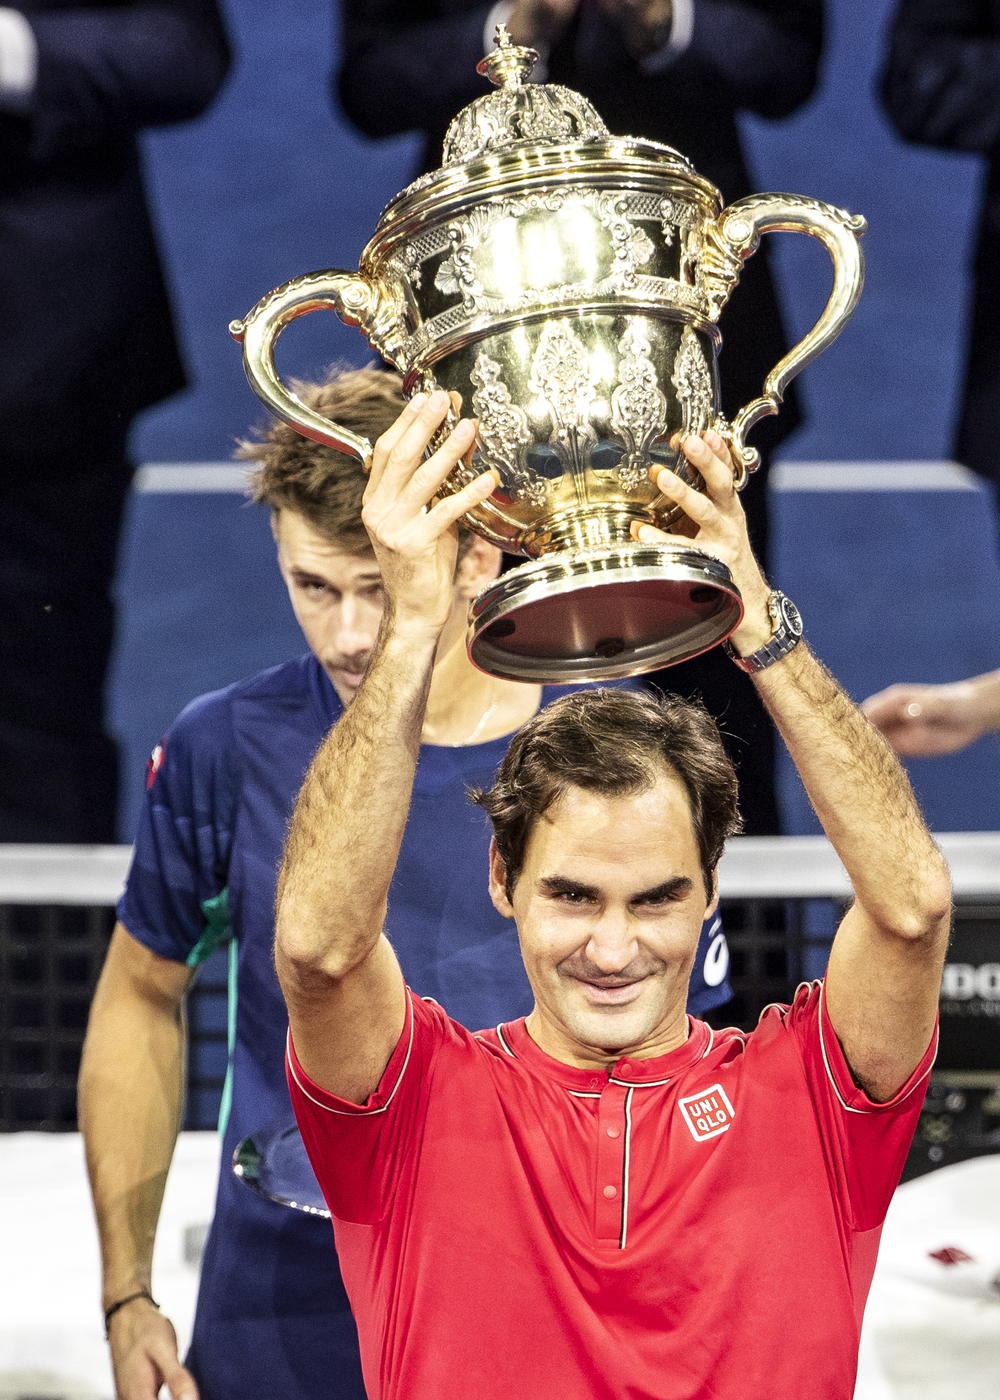 Rodžer Federer je u nedelju osvojio turnir u rodnom Bazelu